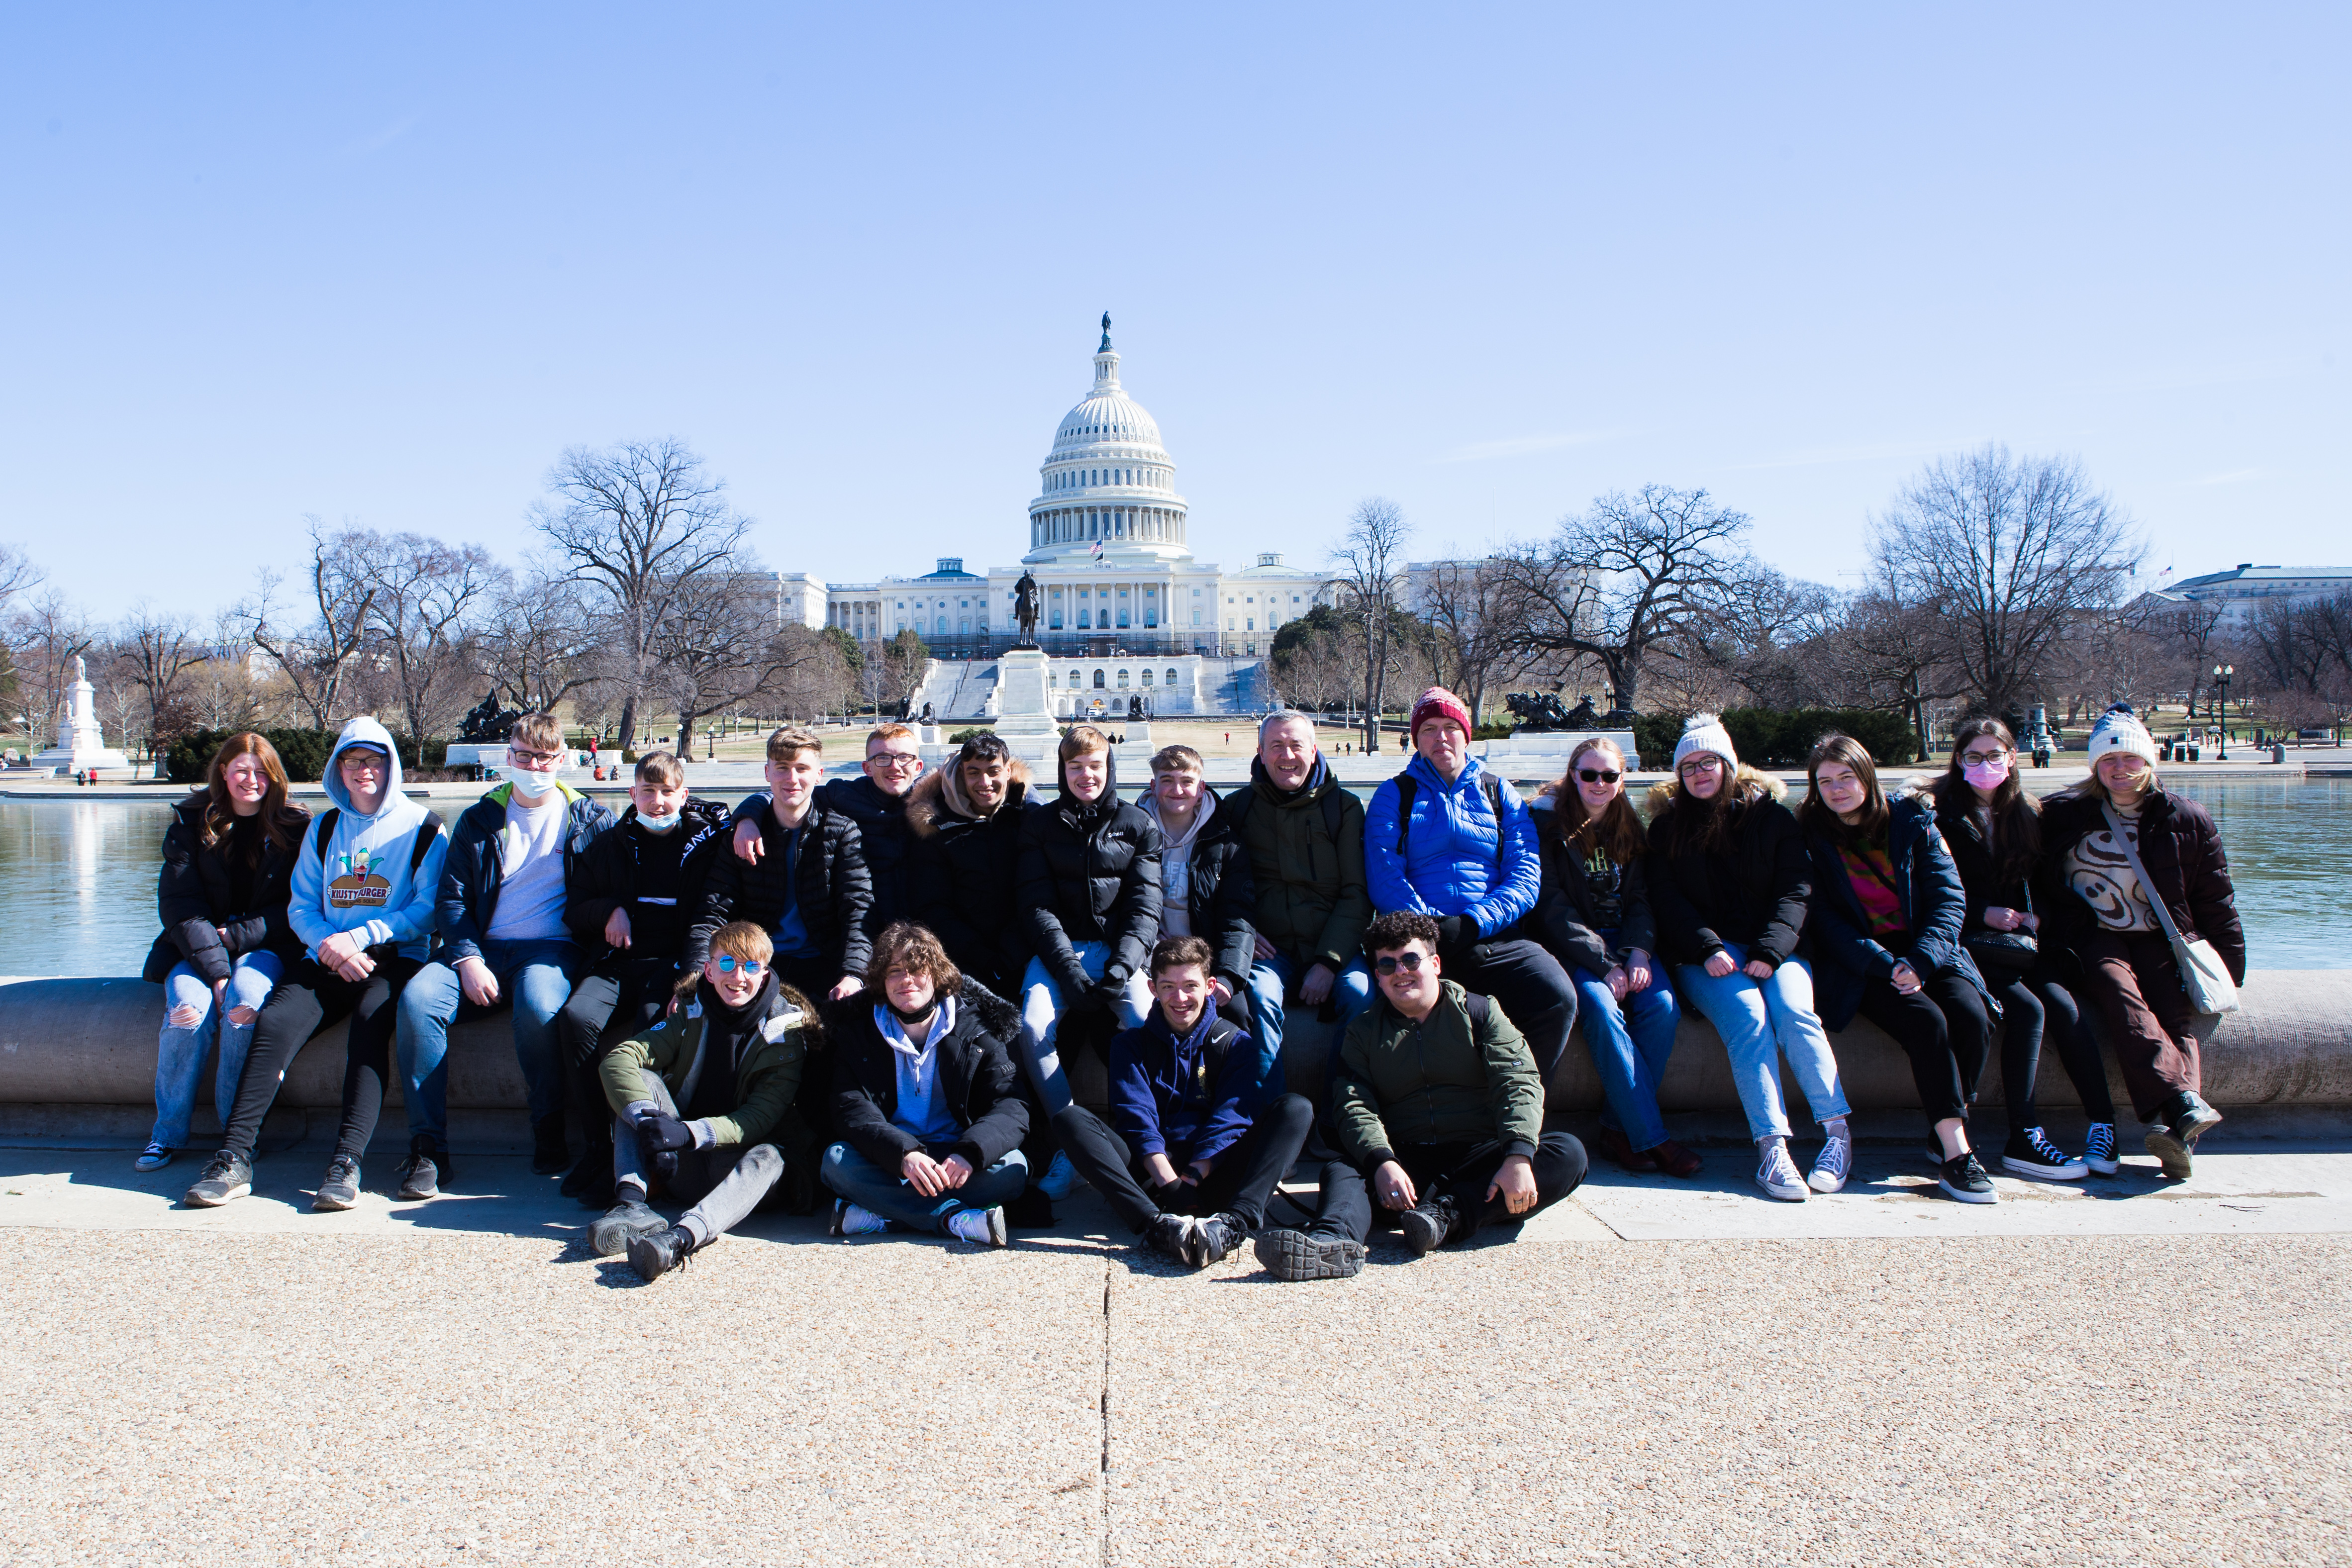 Enjoy private tours of Washington D.C. with a Washington Walks walking tour